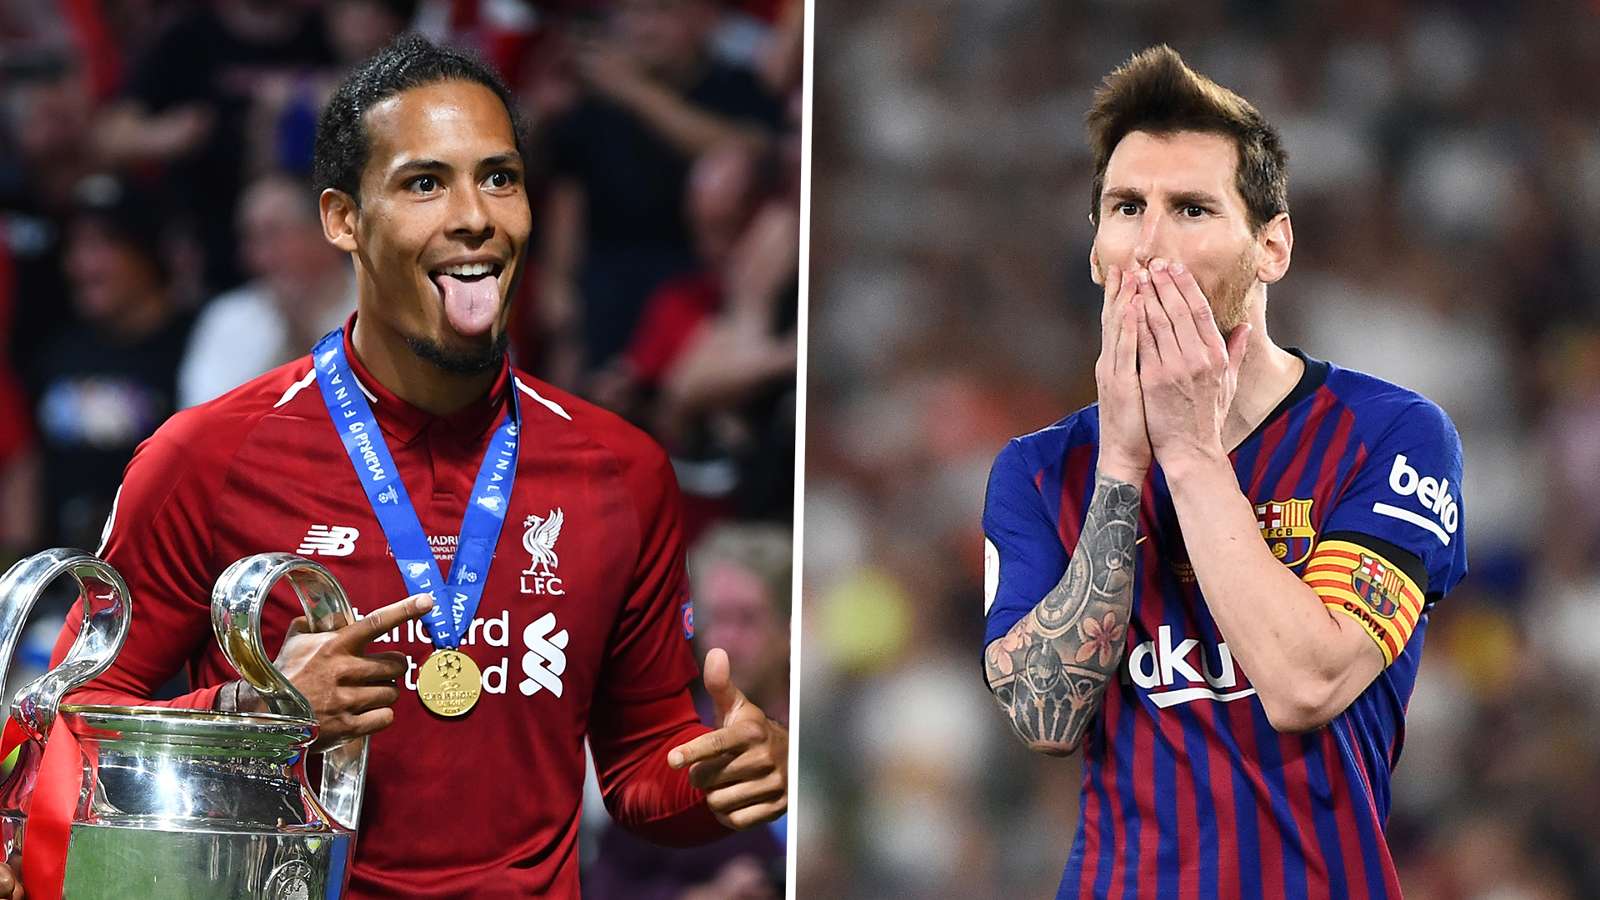 Lionel Messi giành Quả bóng vàng 2019 Chúc mừng anh, bởi những phép màu ở tuổi 32 chẳng thể kéo dài mãi mãi hình ảnh gốc 2